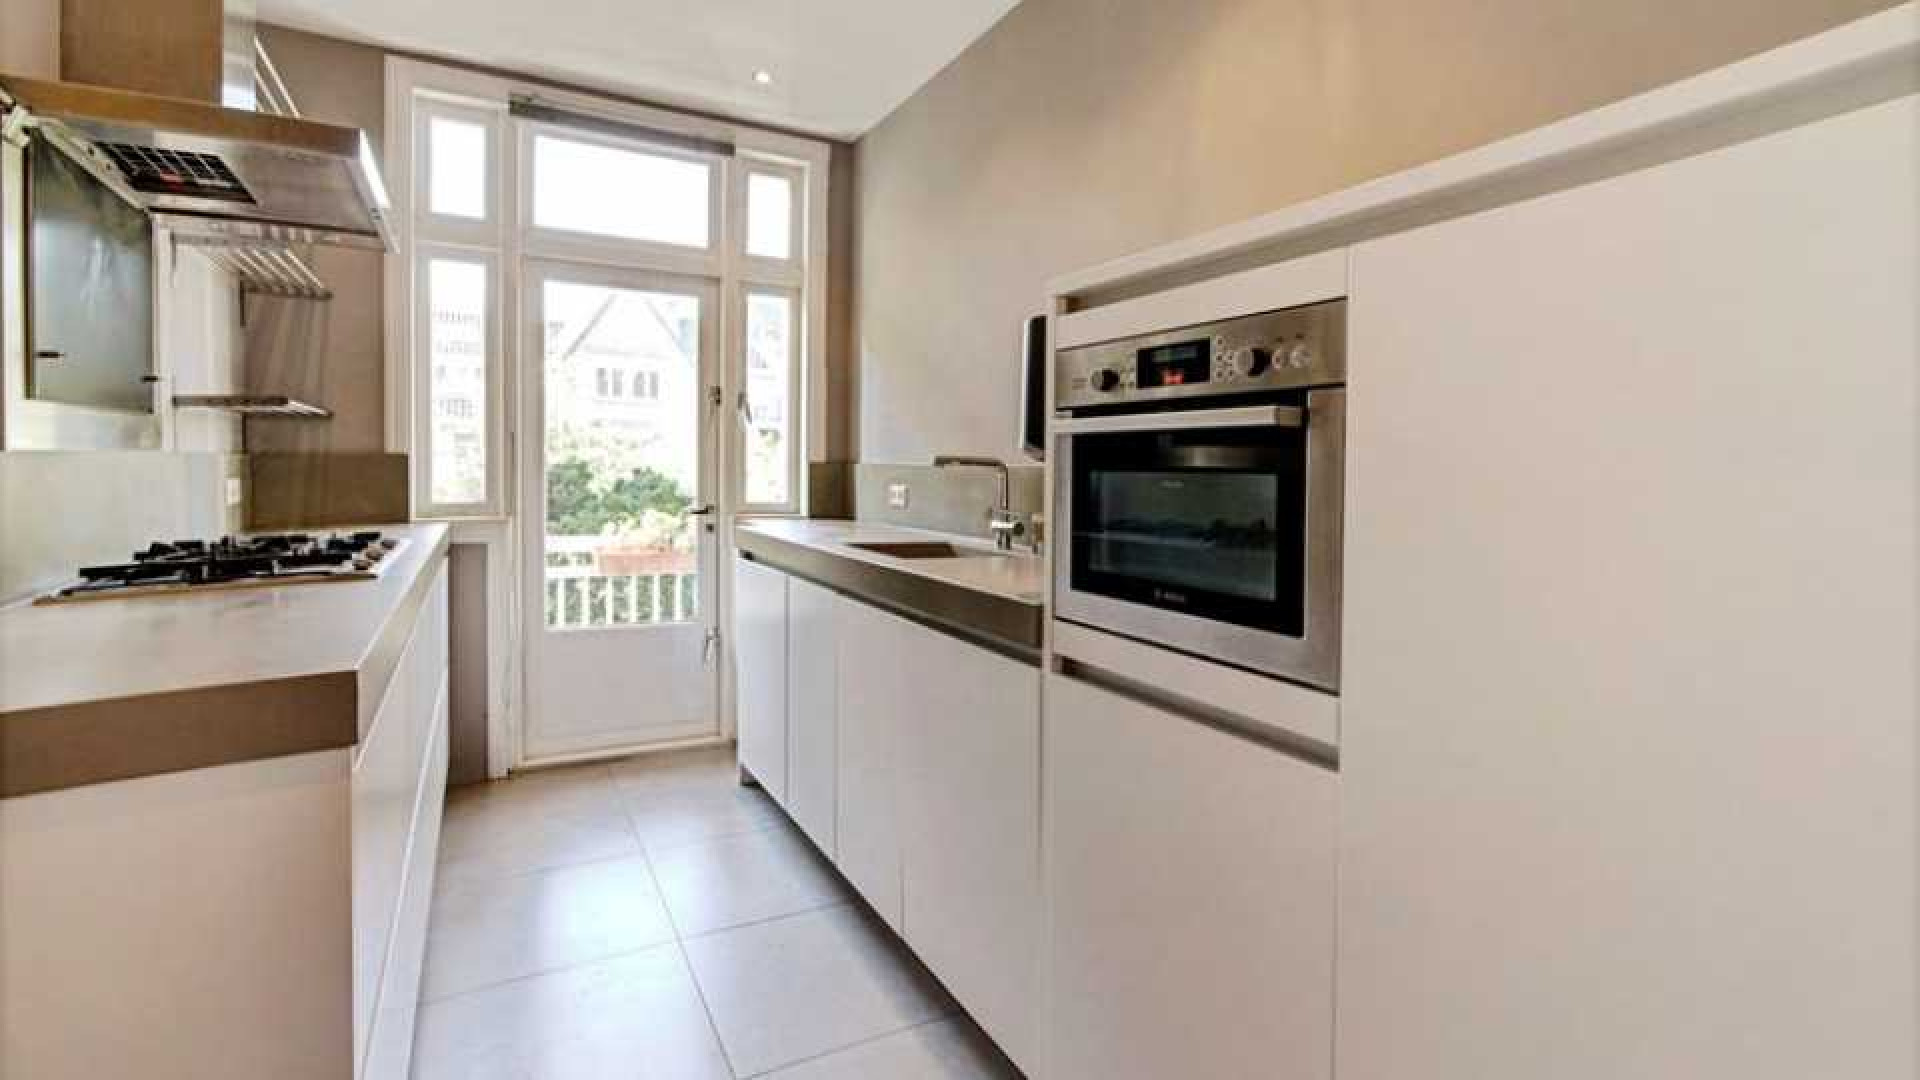 Eva Jinek koopt luxe appartement in Amsterdam Zuid. Zie foto's 12